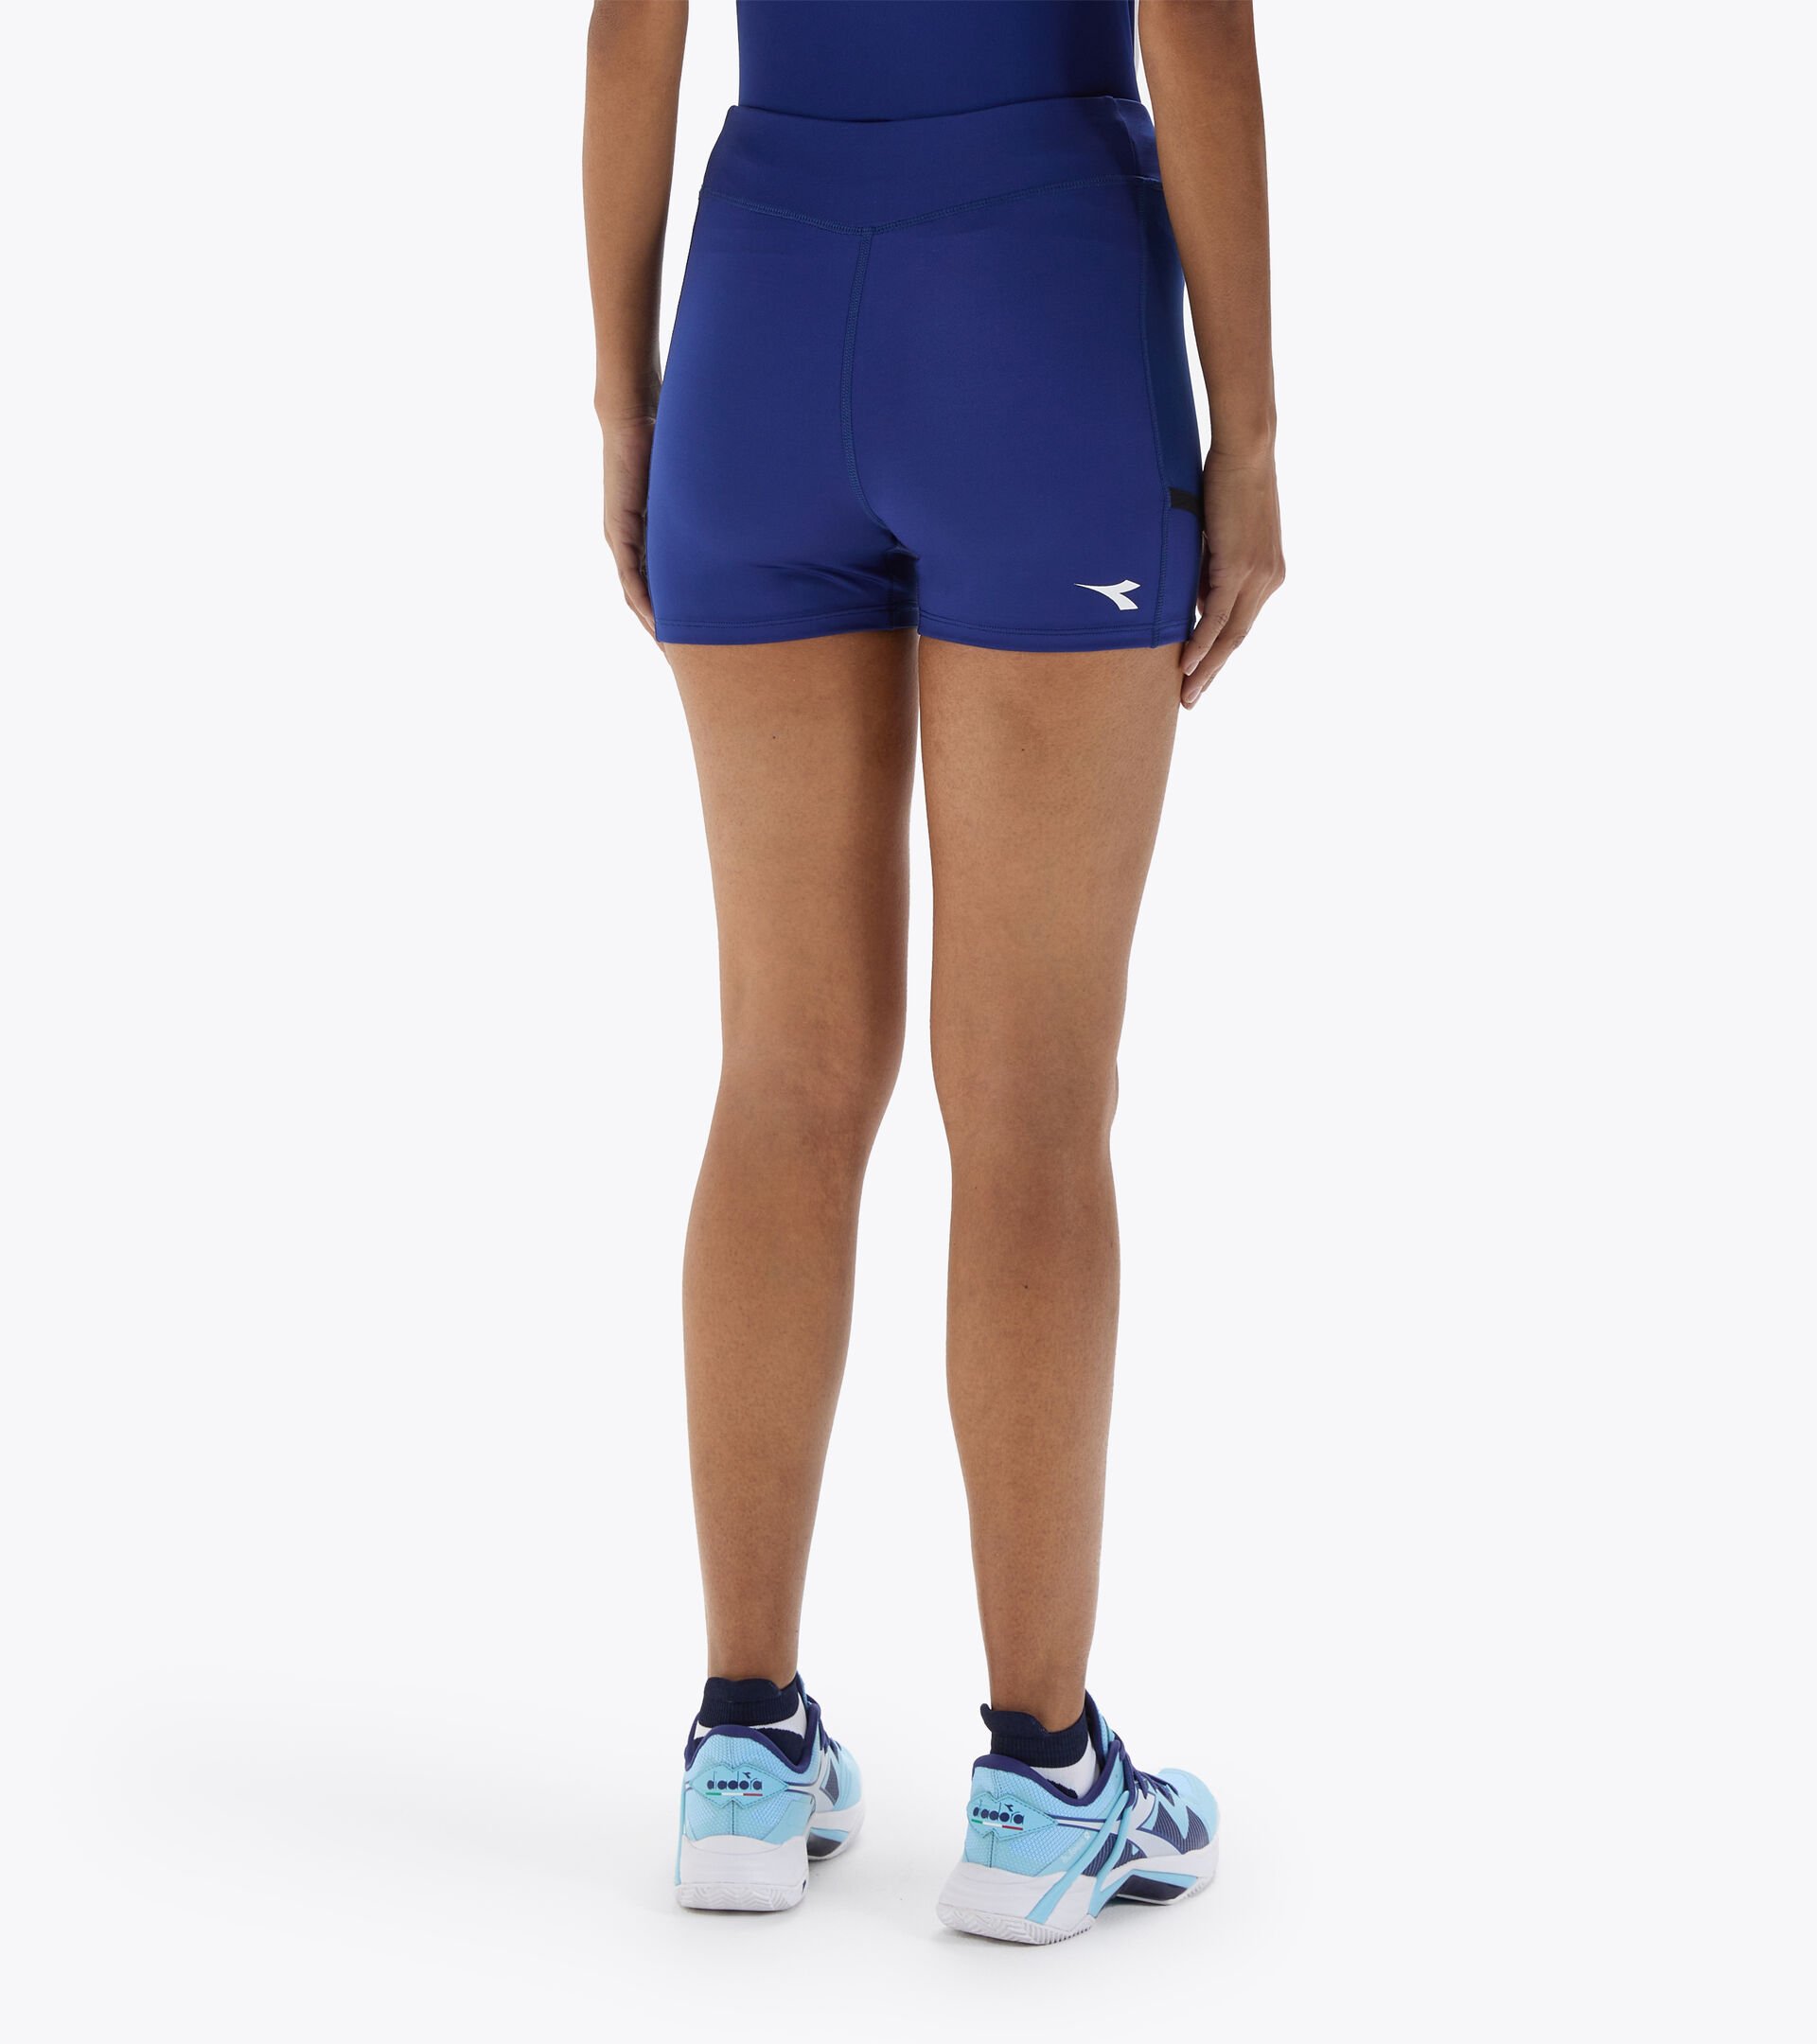 Pantalones cortos de tenis - Mujer L. SHORT TIGHTS POCKET CIANOTIPO AZUL - Diadora